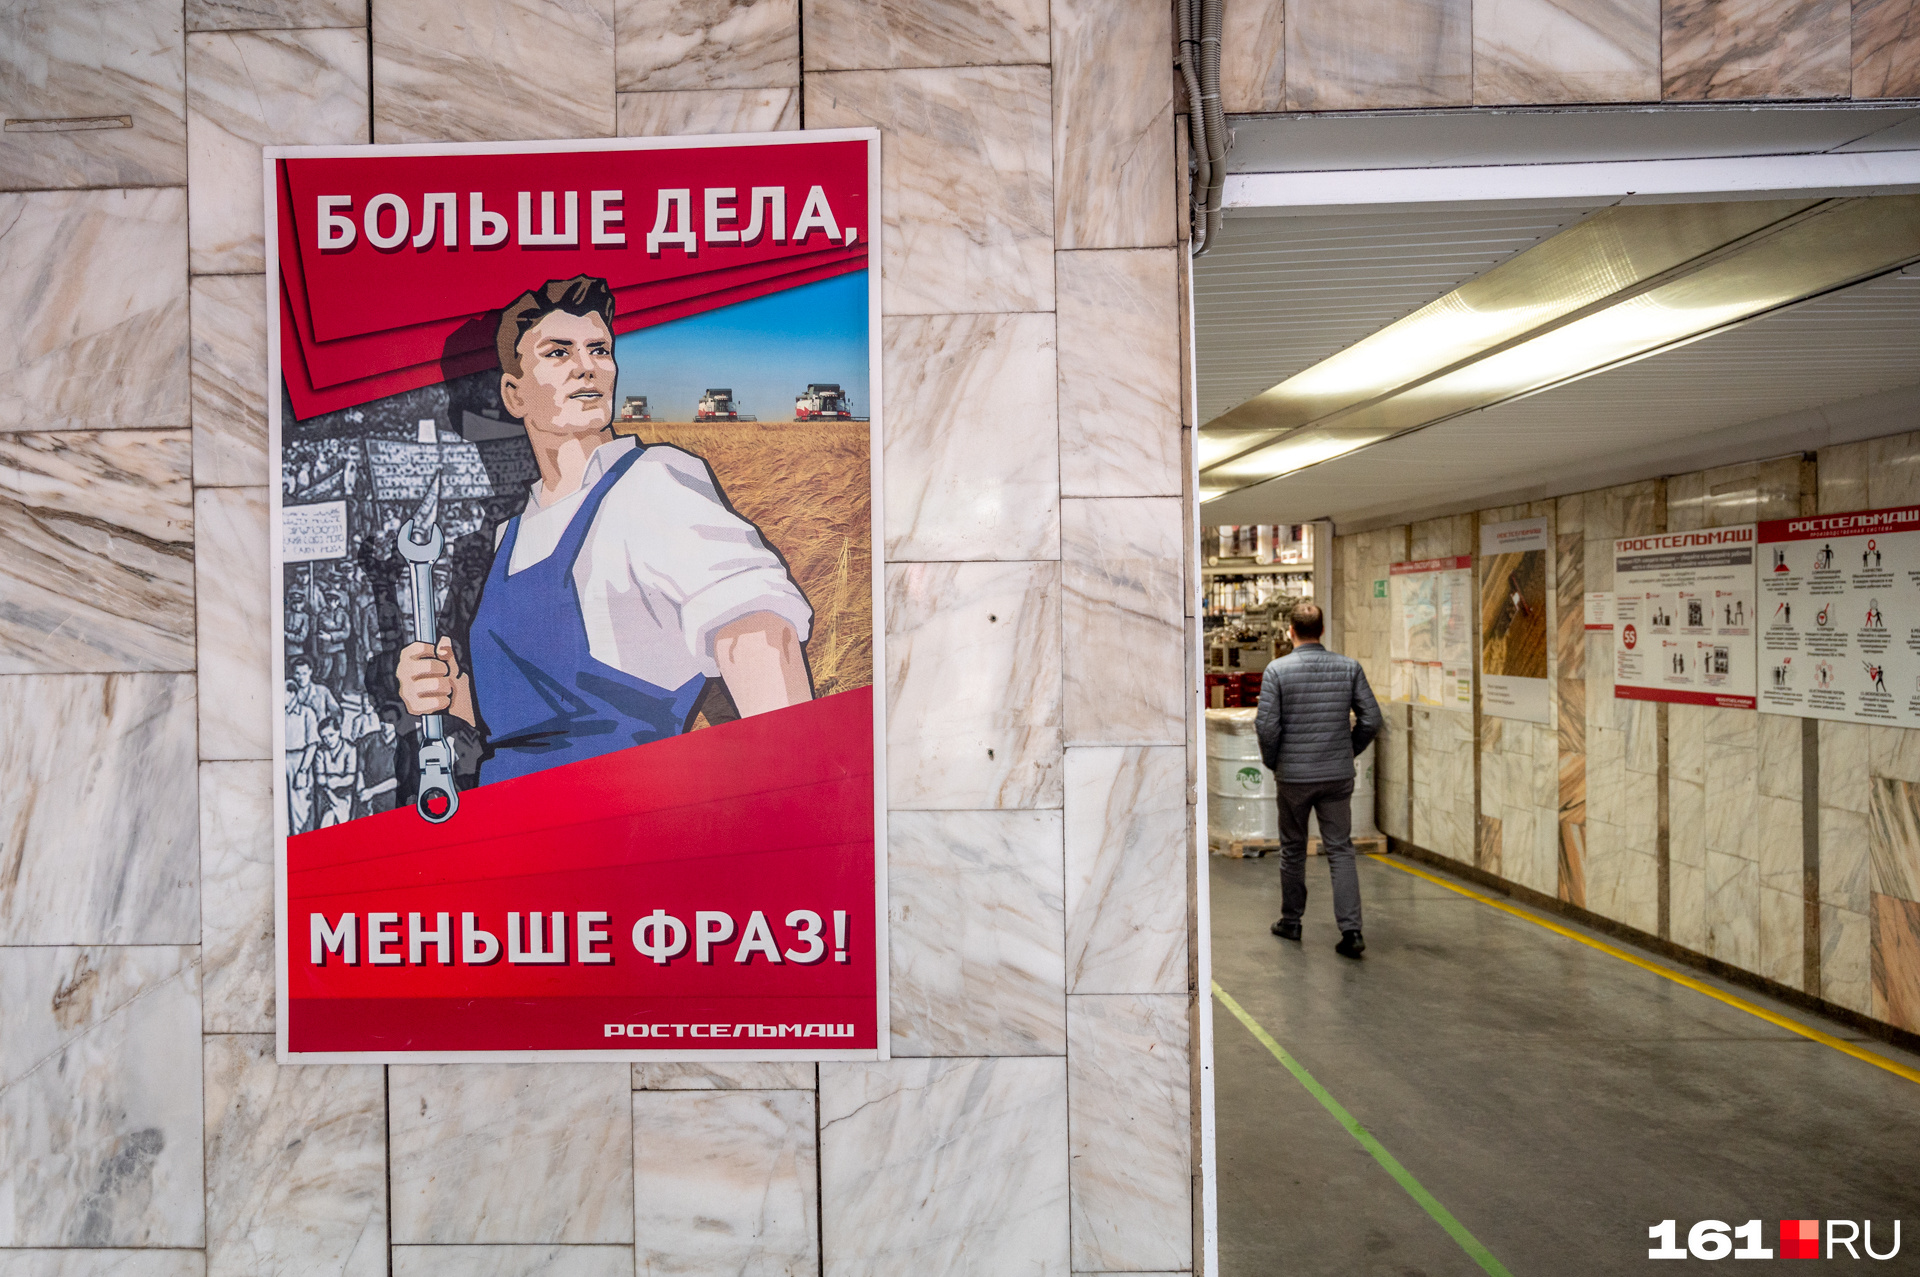 Первое, что видишь на входе в цех, — советские лозунги, призванные повысить эффективность труда